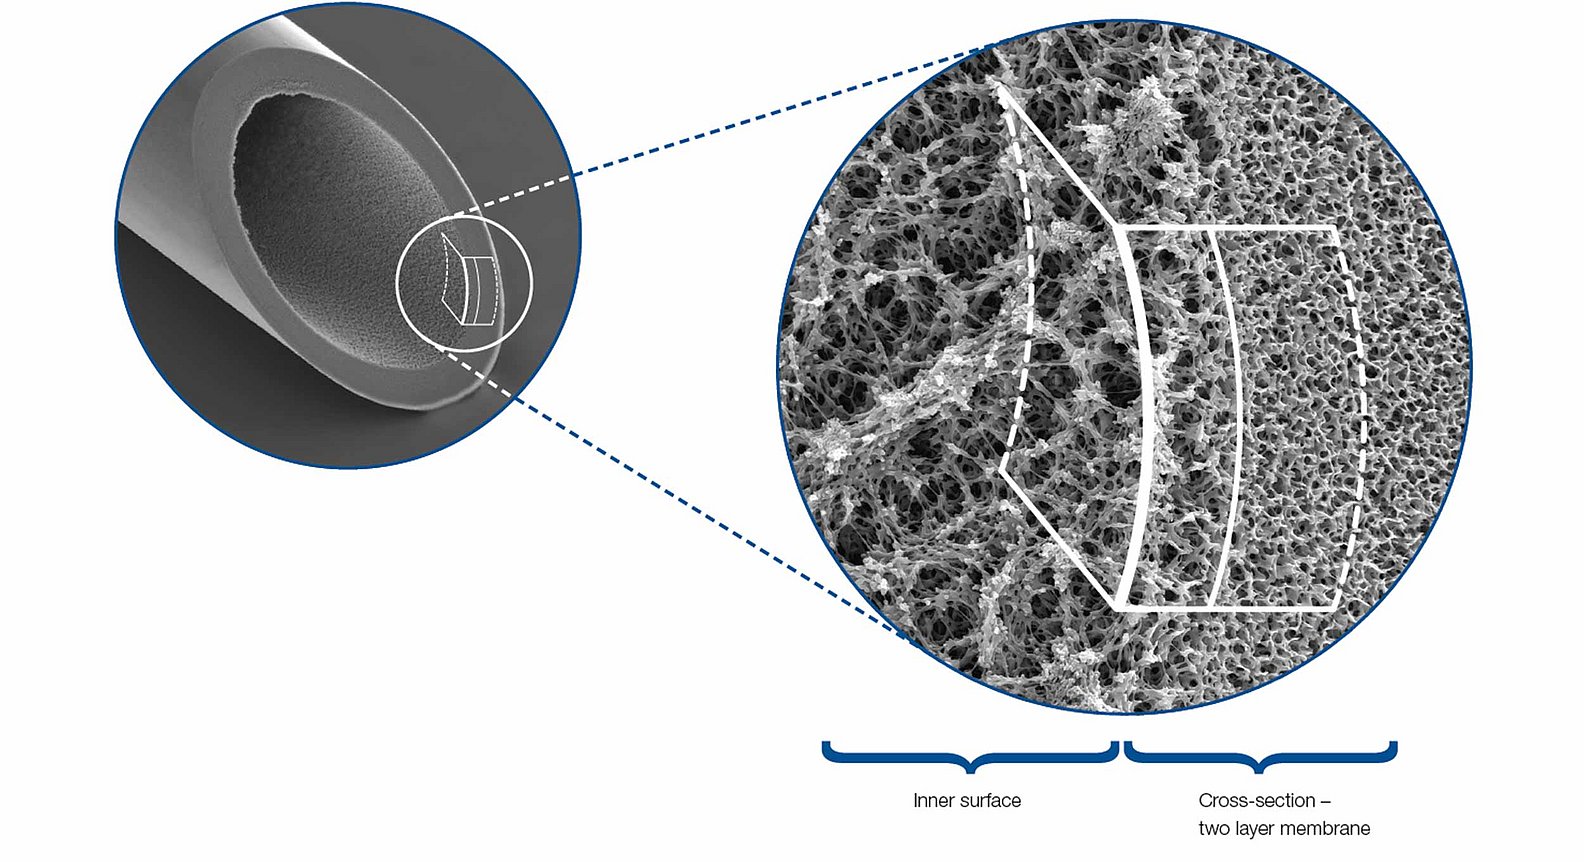 Snímek plazmafiltru z elektronového mikroskopu